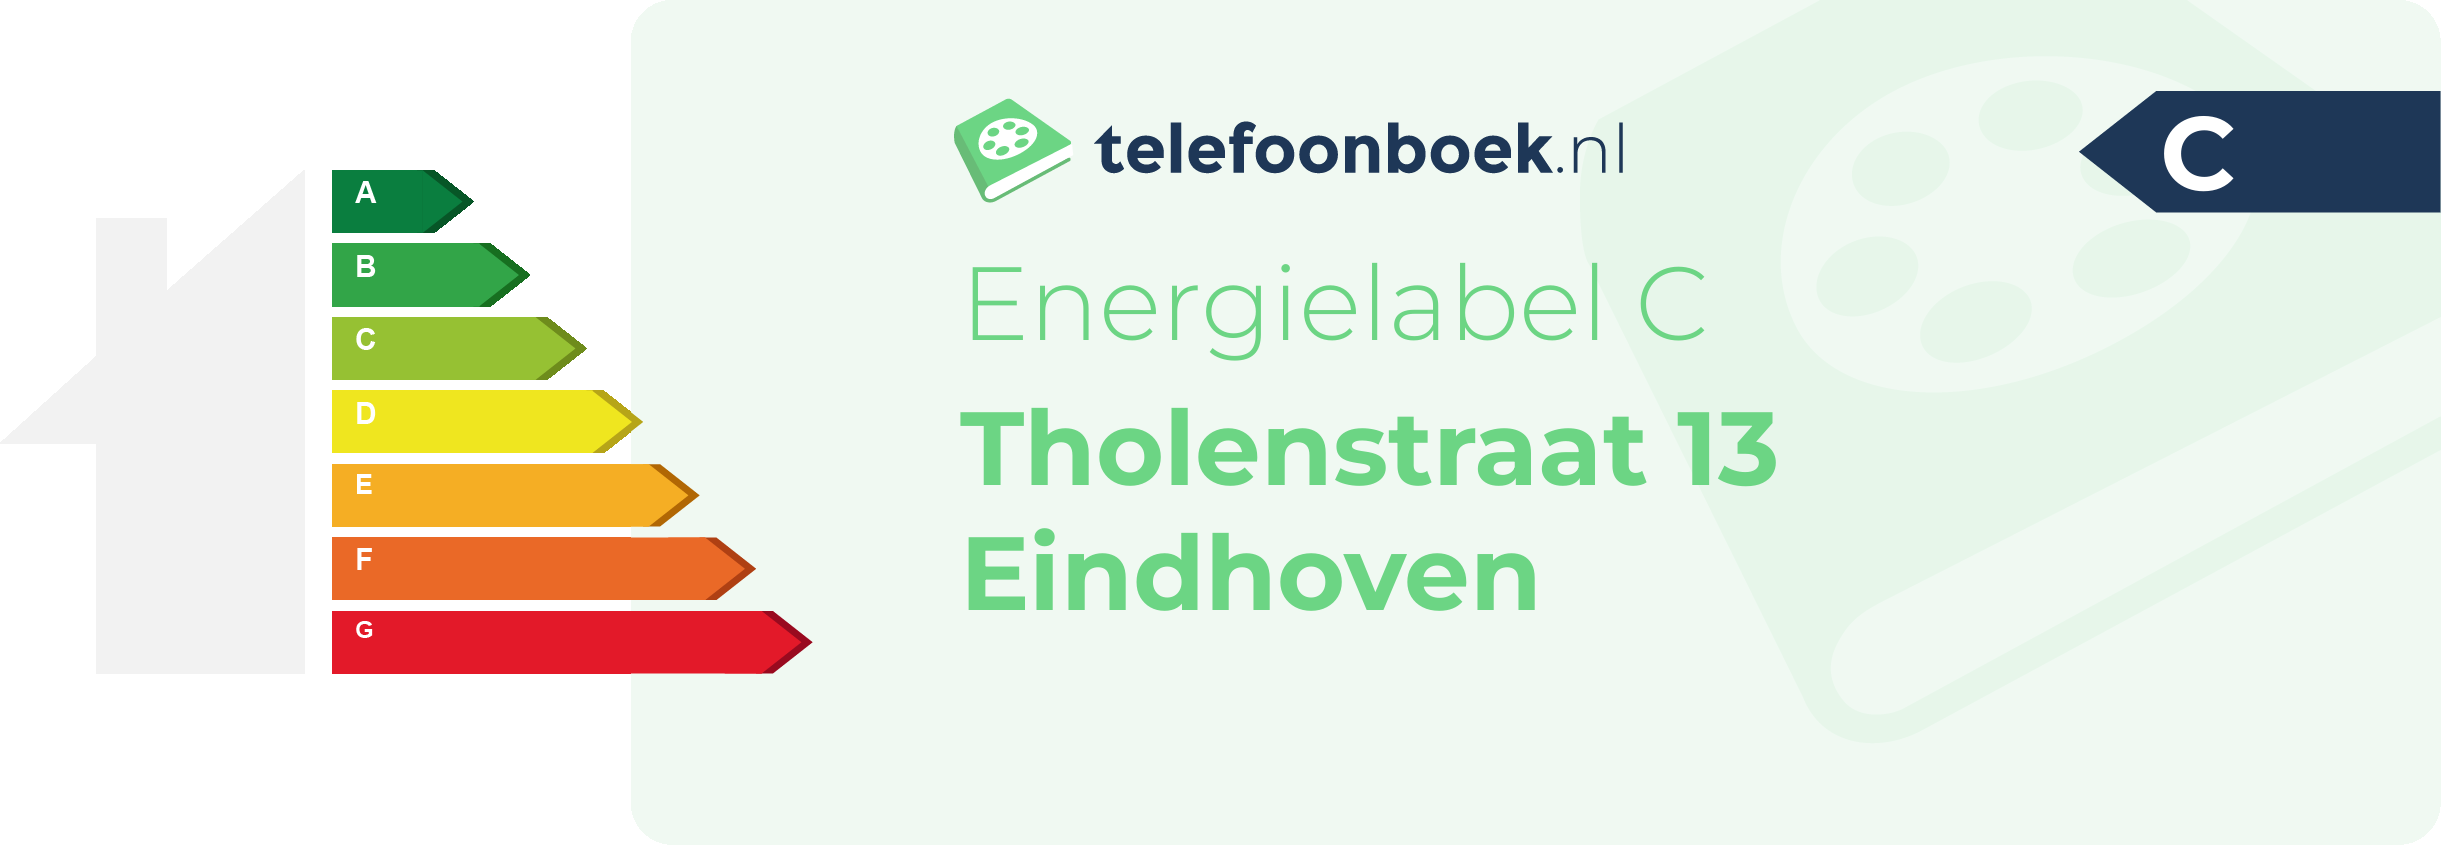 Energielabel Tholenstraat 13 Eindhoven